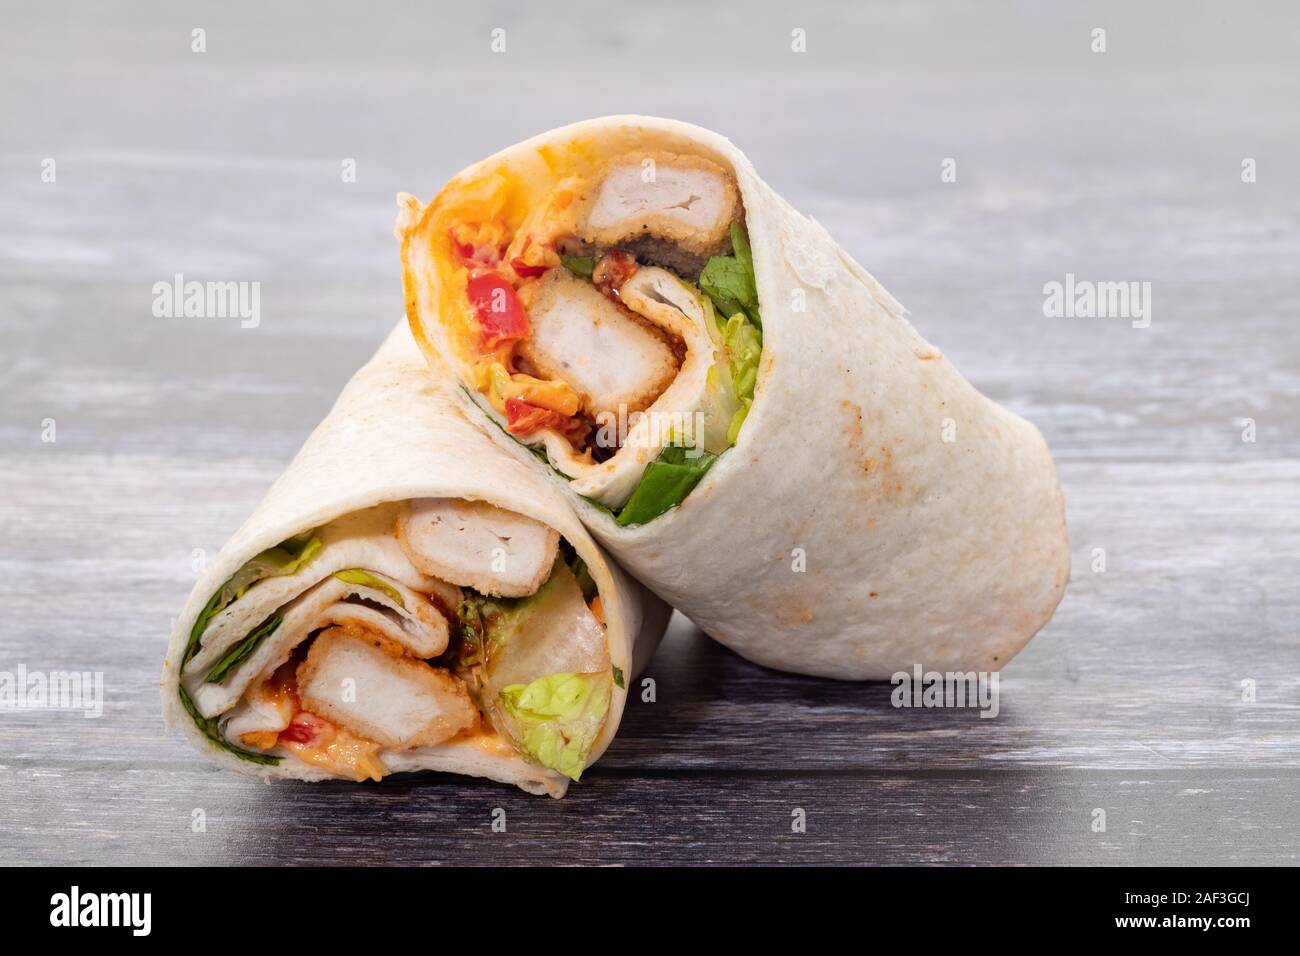 Pollo e insalata sandwich wrap Foto Stock